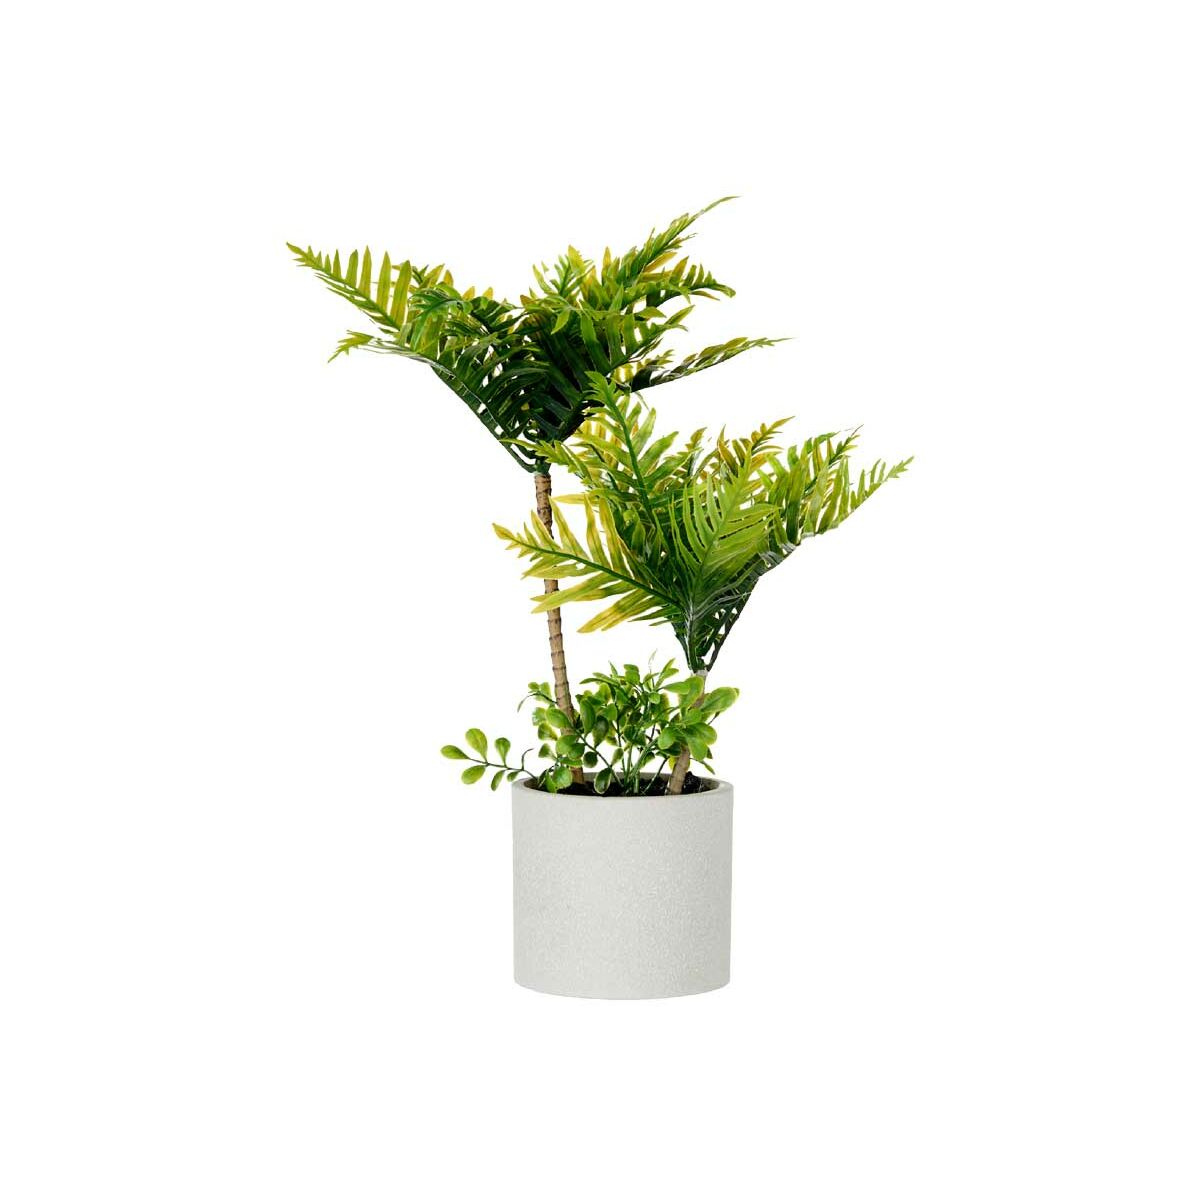 Decorative Plant Palm tree Plastic Cement 12 x 45 x 12 cm (6 Units)